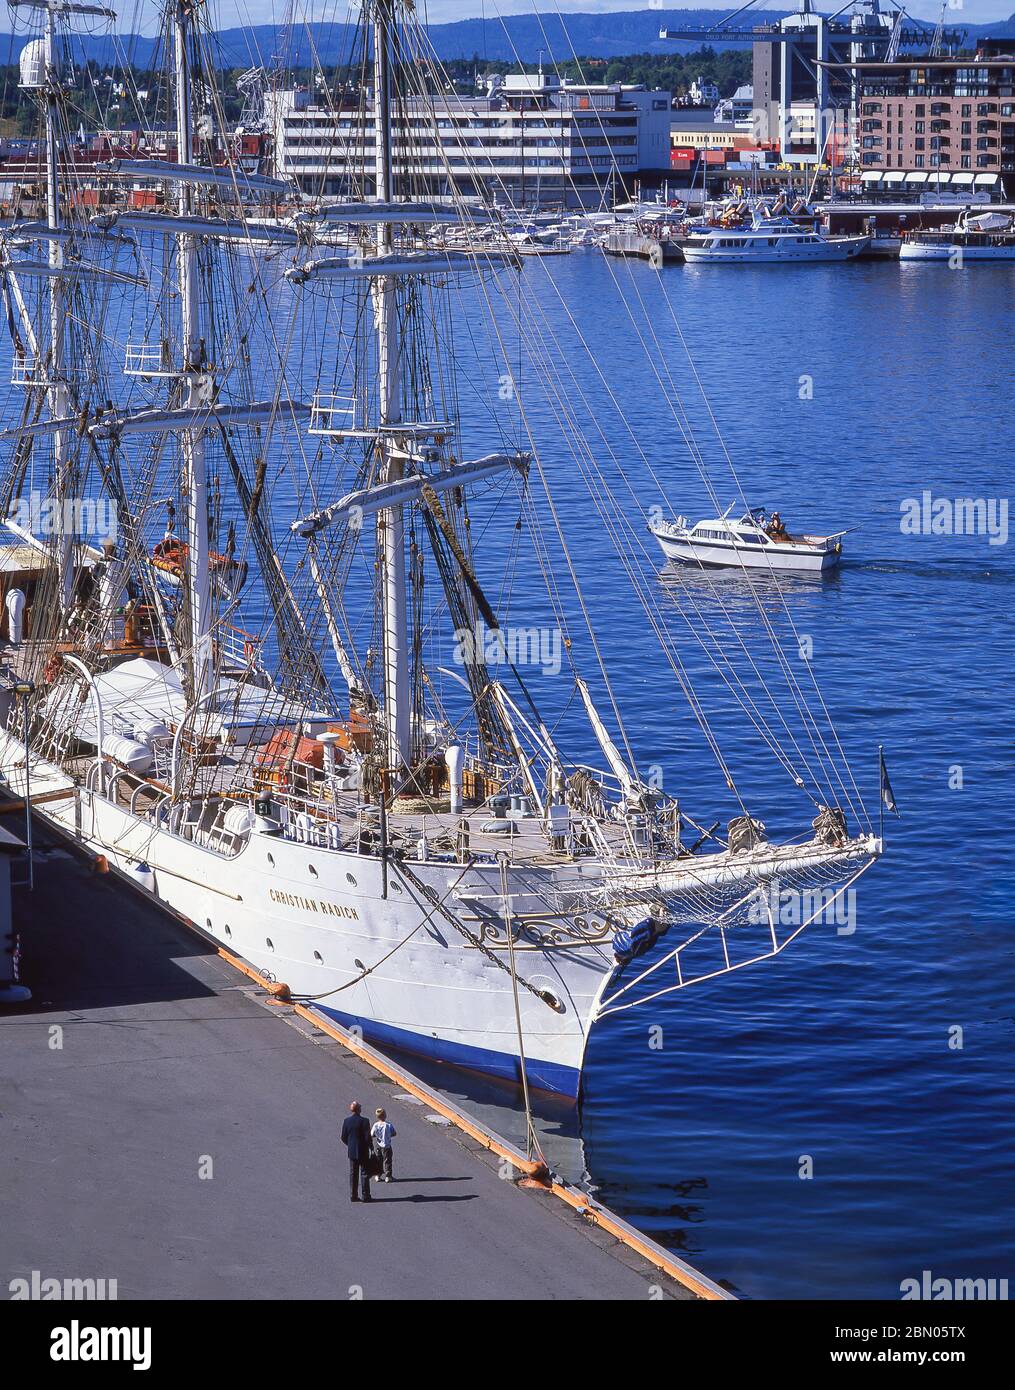 El barco noruego con todo el arcato 'Christian Radich' atracó en el puerto de Oslo, Akker Brygge, Oslo, Reino de Noruega Foto de stock